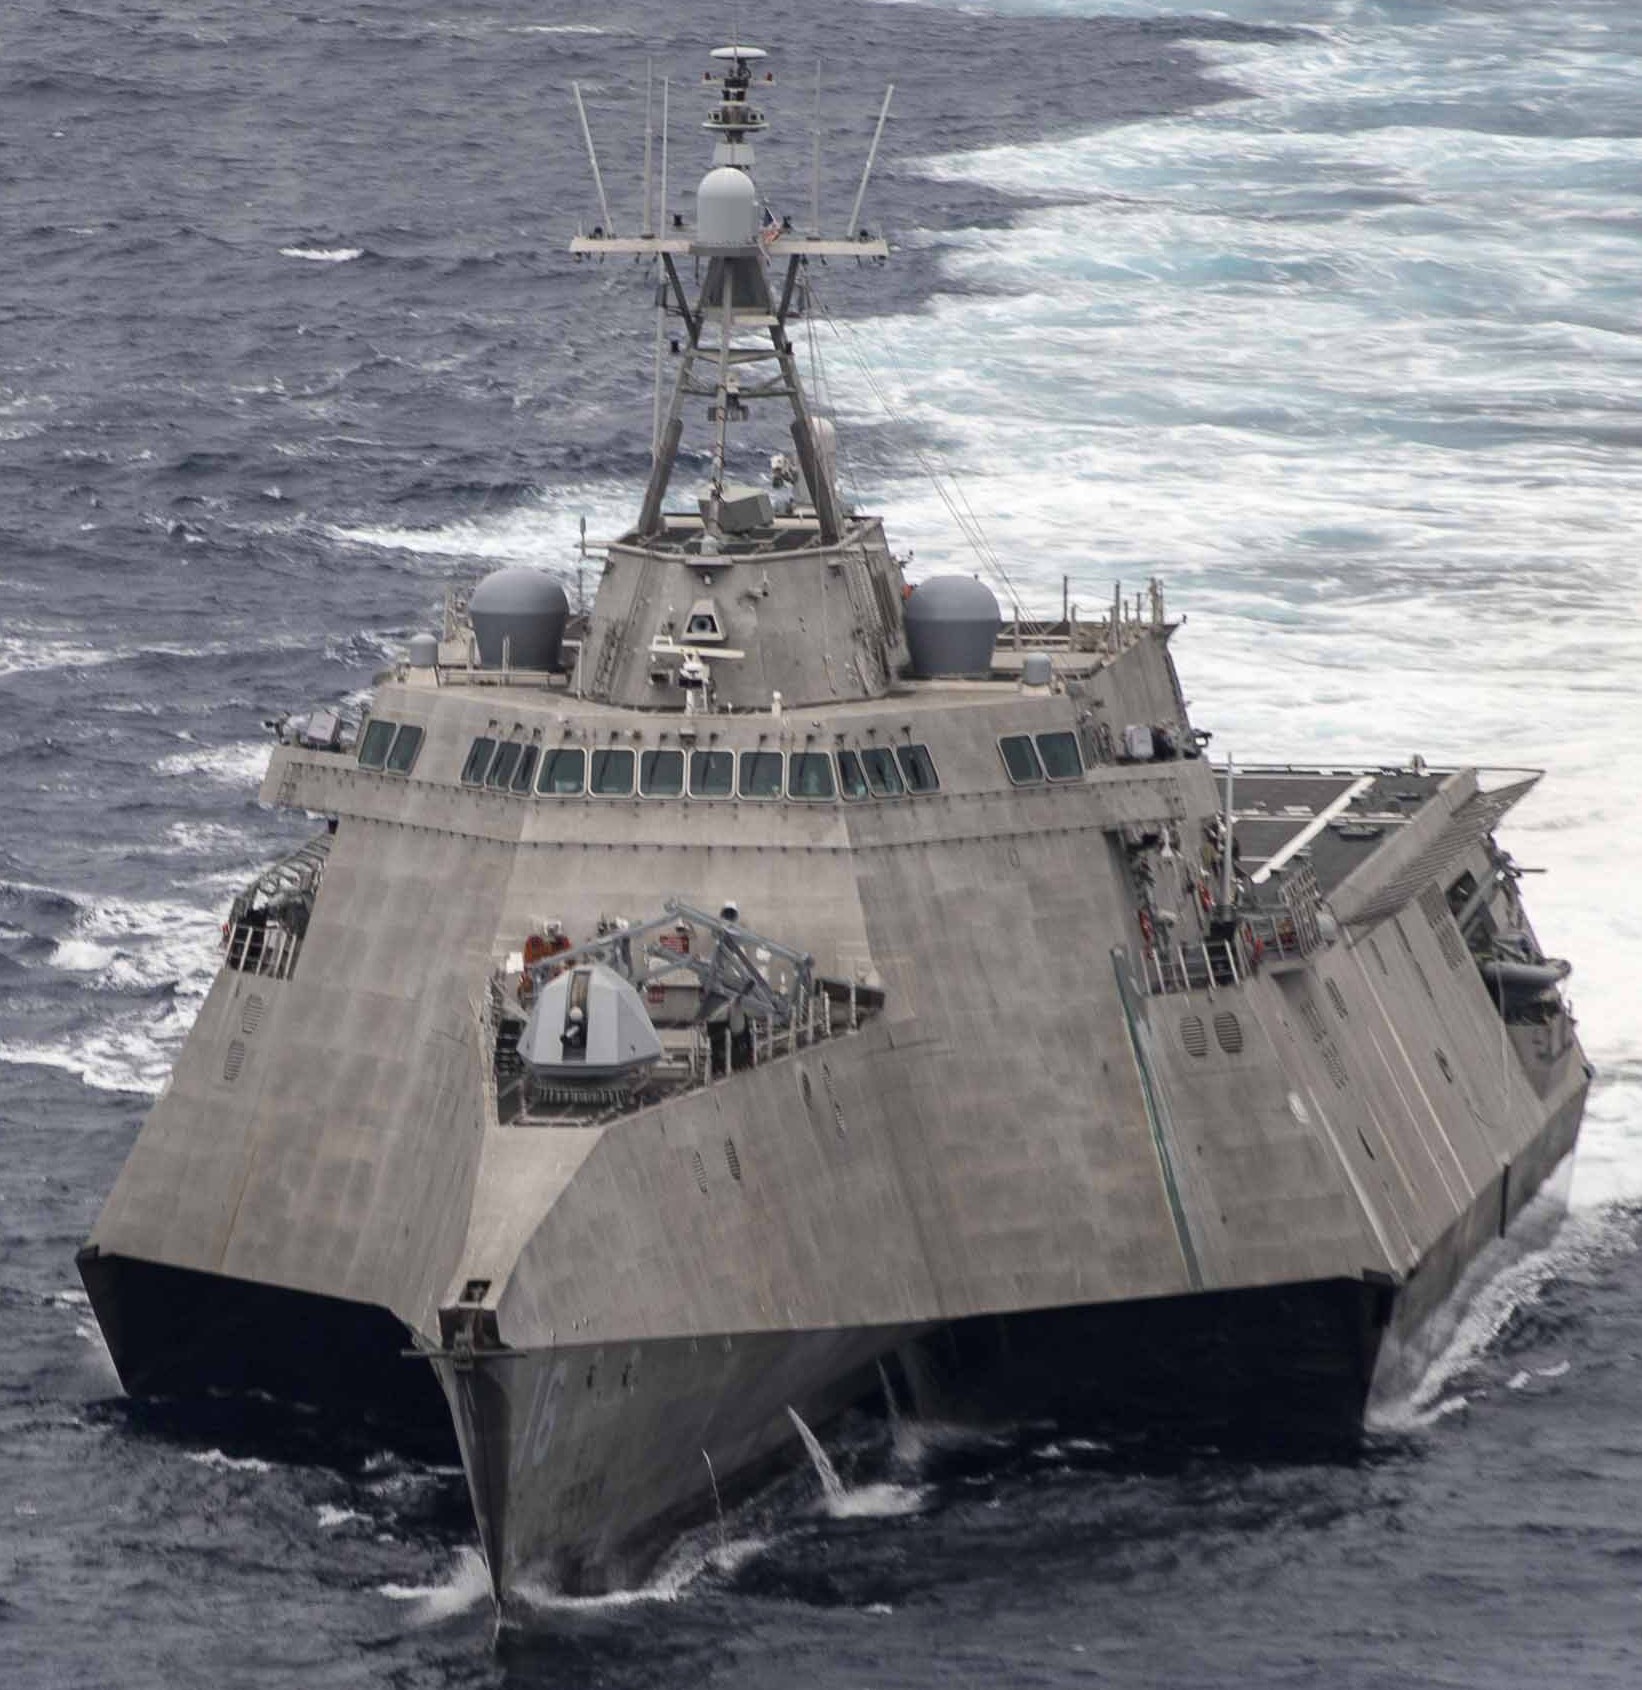 lcs-16 uss tulsa independence class littoral combat ship us navy 27